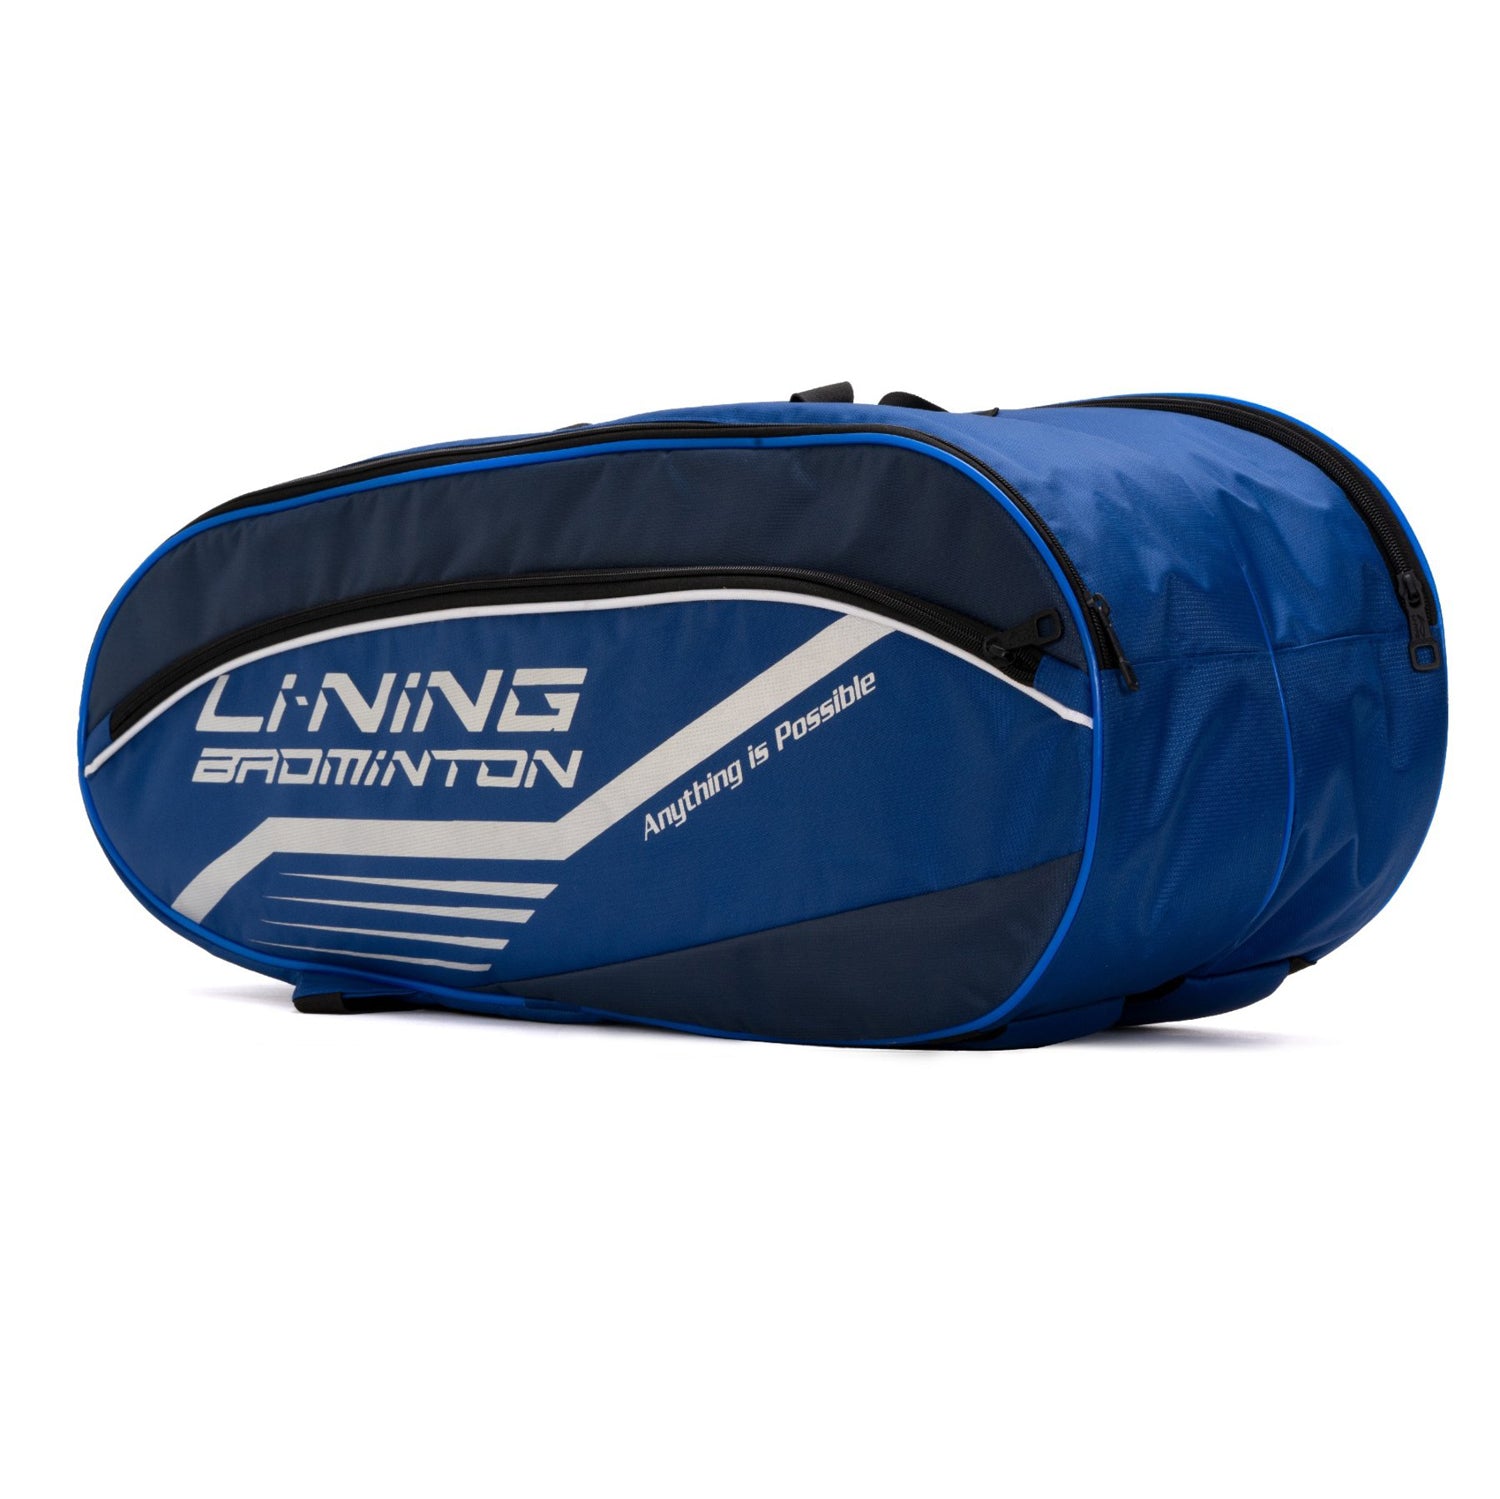 Li-Ning ABDS683 Racquet Kitbag - Best Price online Prokicksports.com